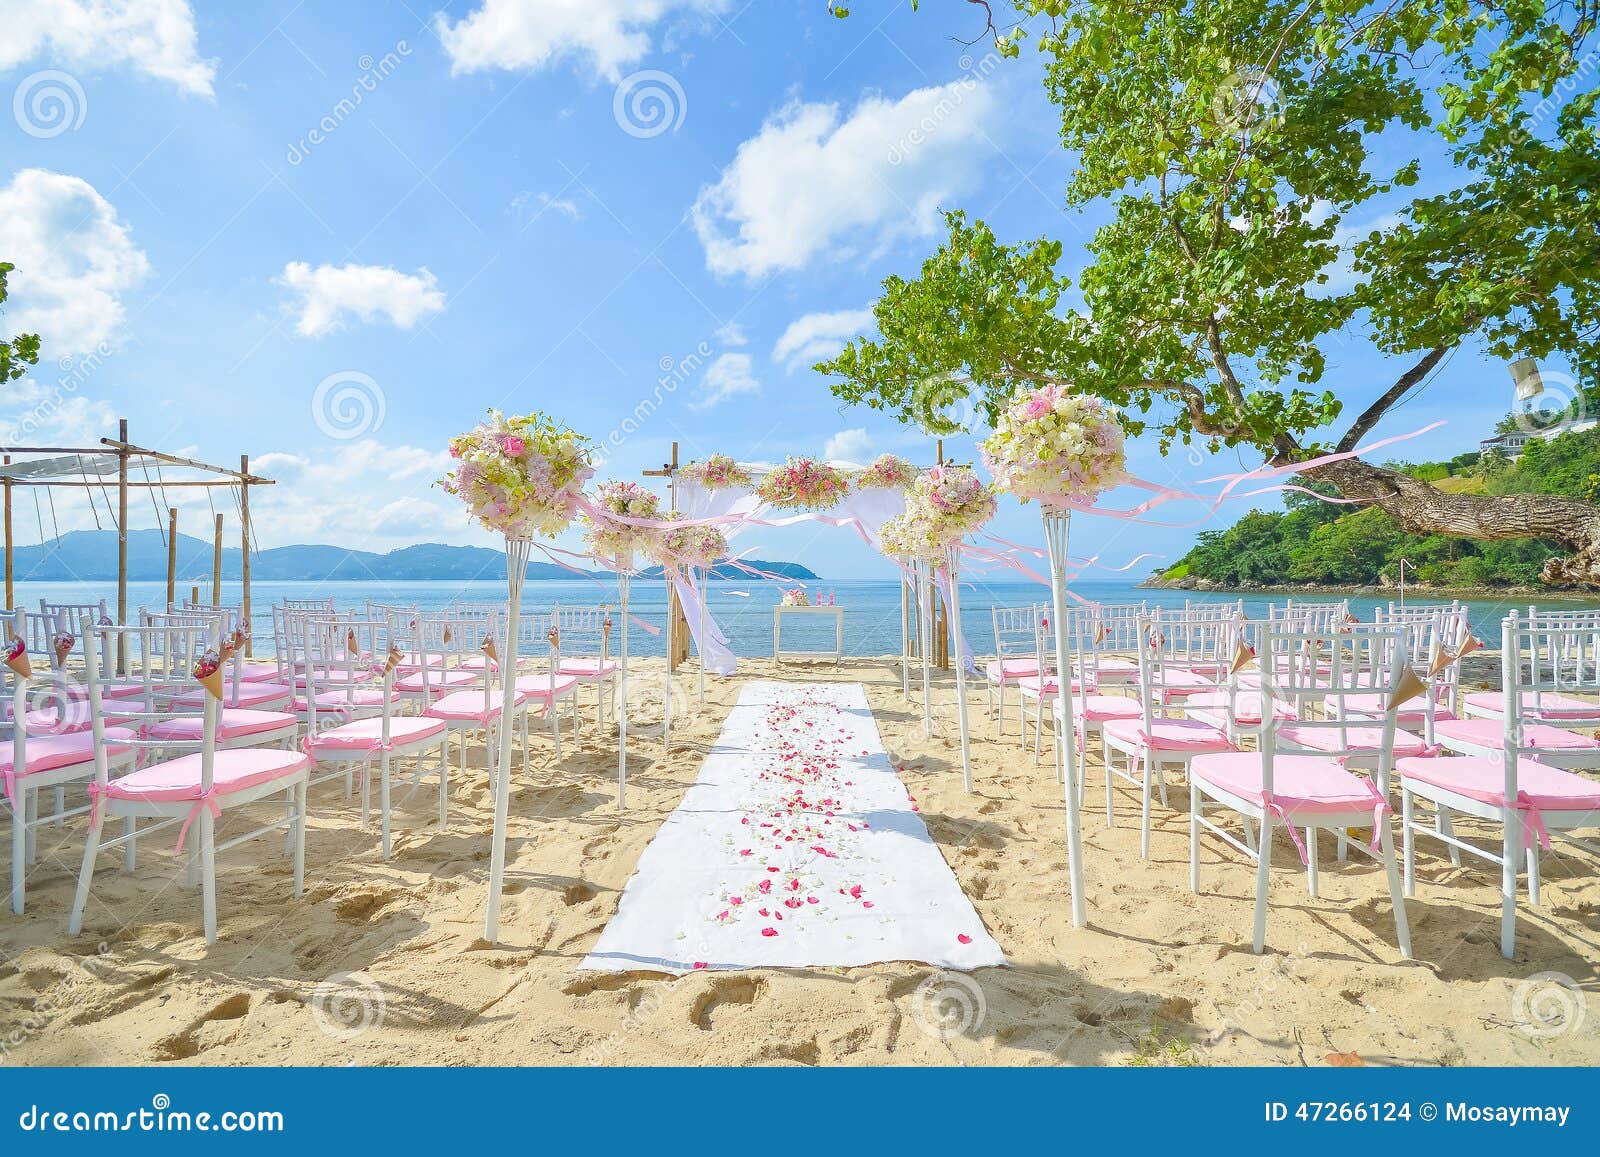 大海边的沙滩婚礼现场布置50368_其它类_其它类_图库壁纸_68Design